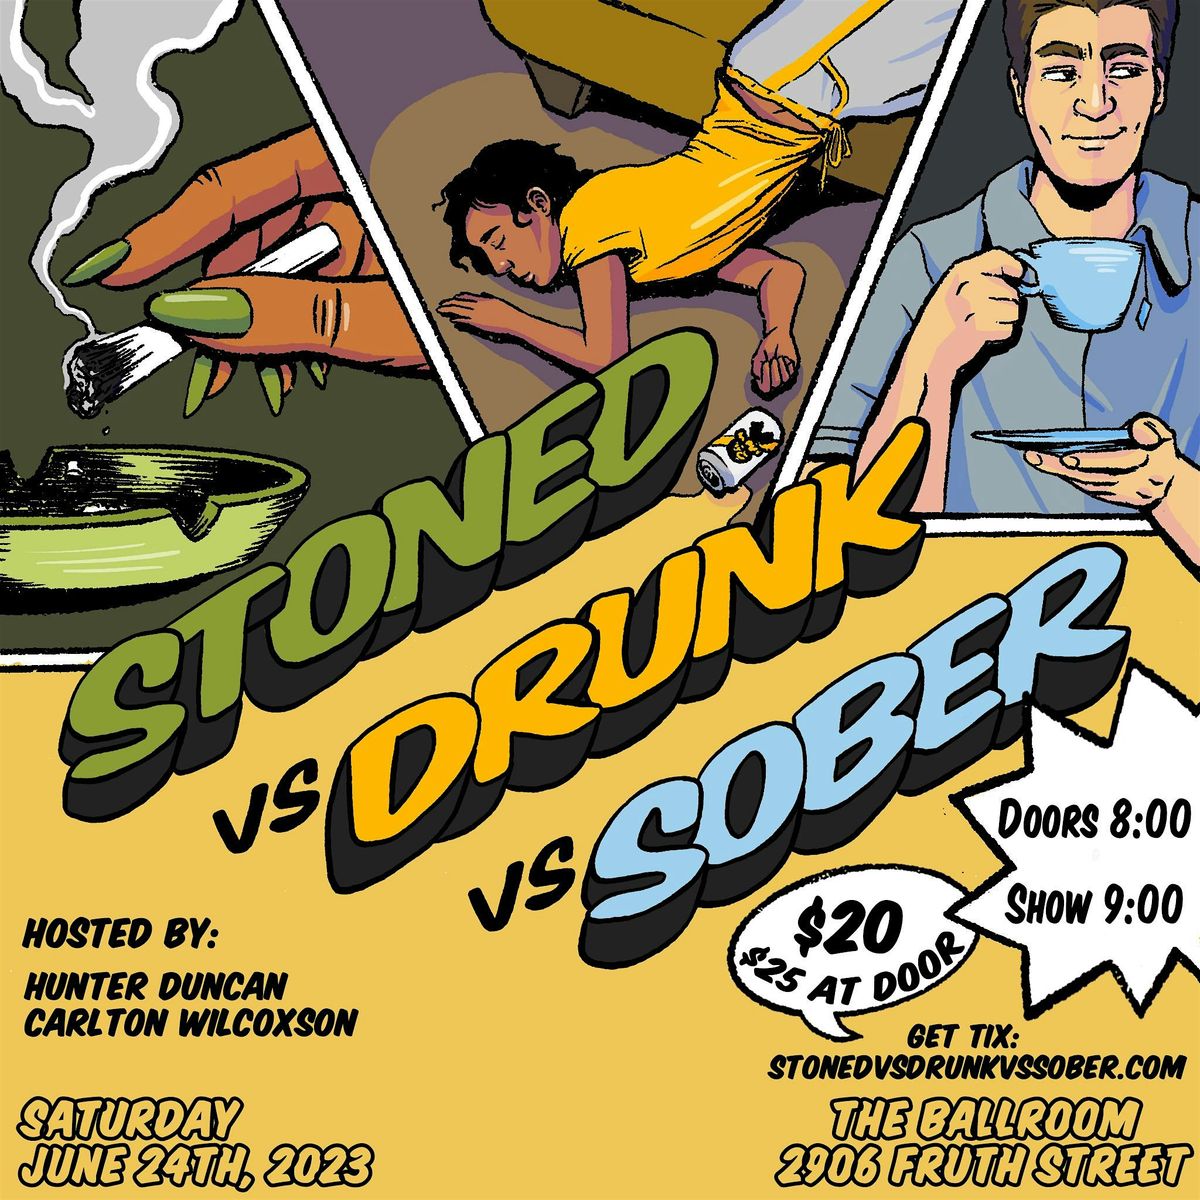 Stoned vs Drunk vs Sober: AUGUST BLAST!